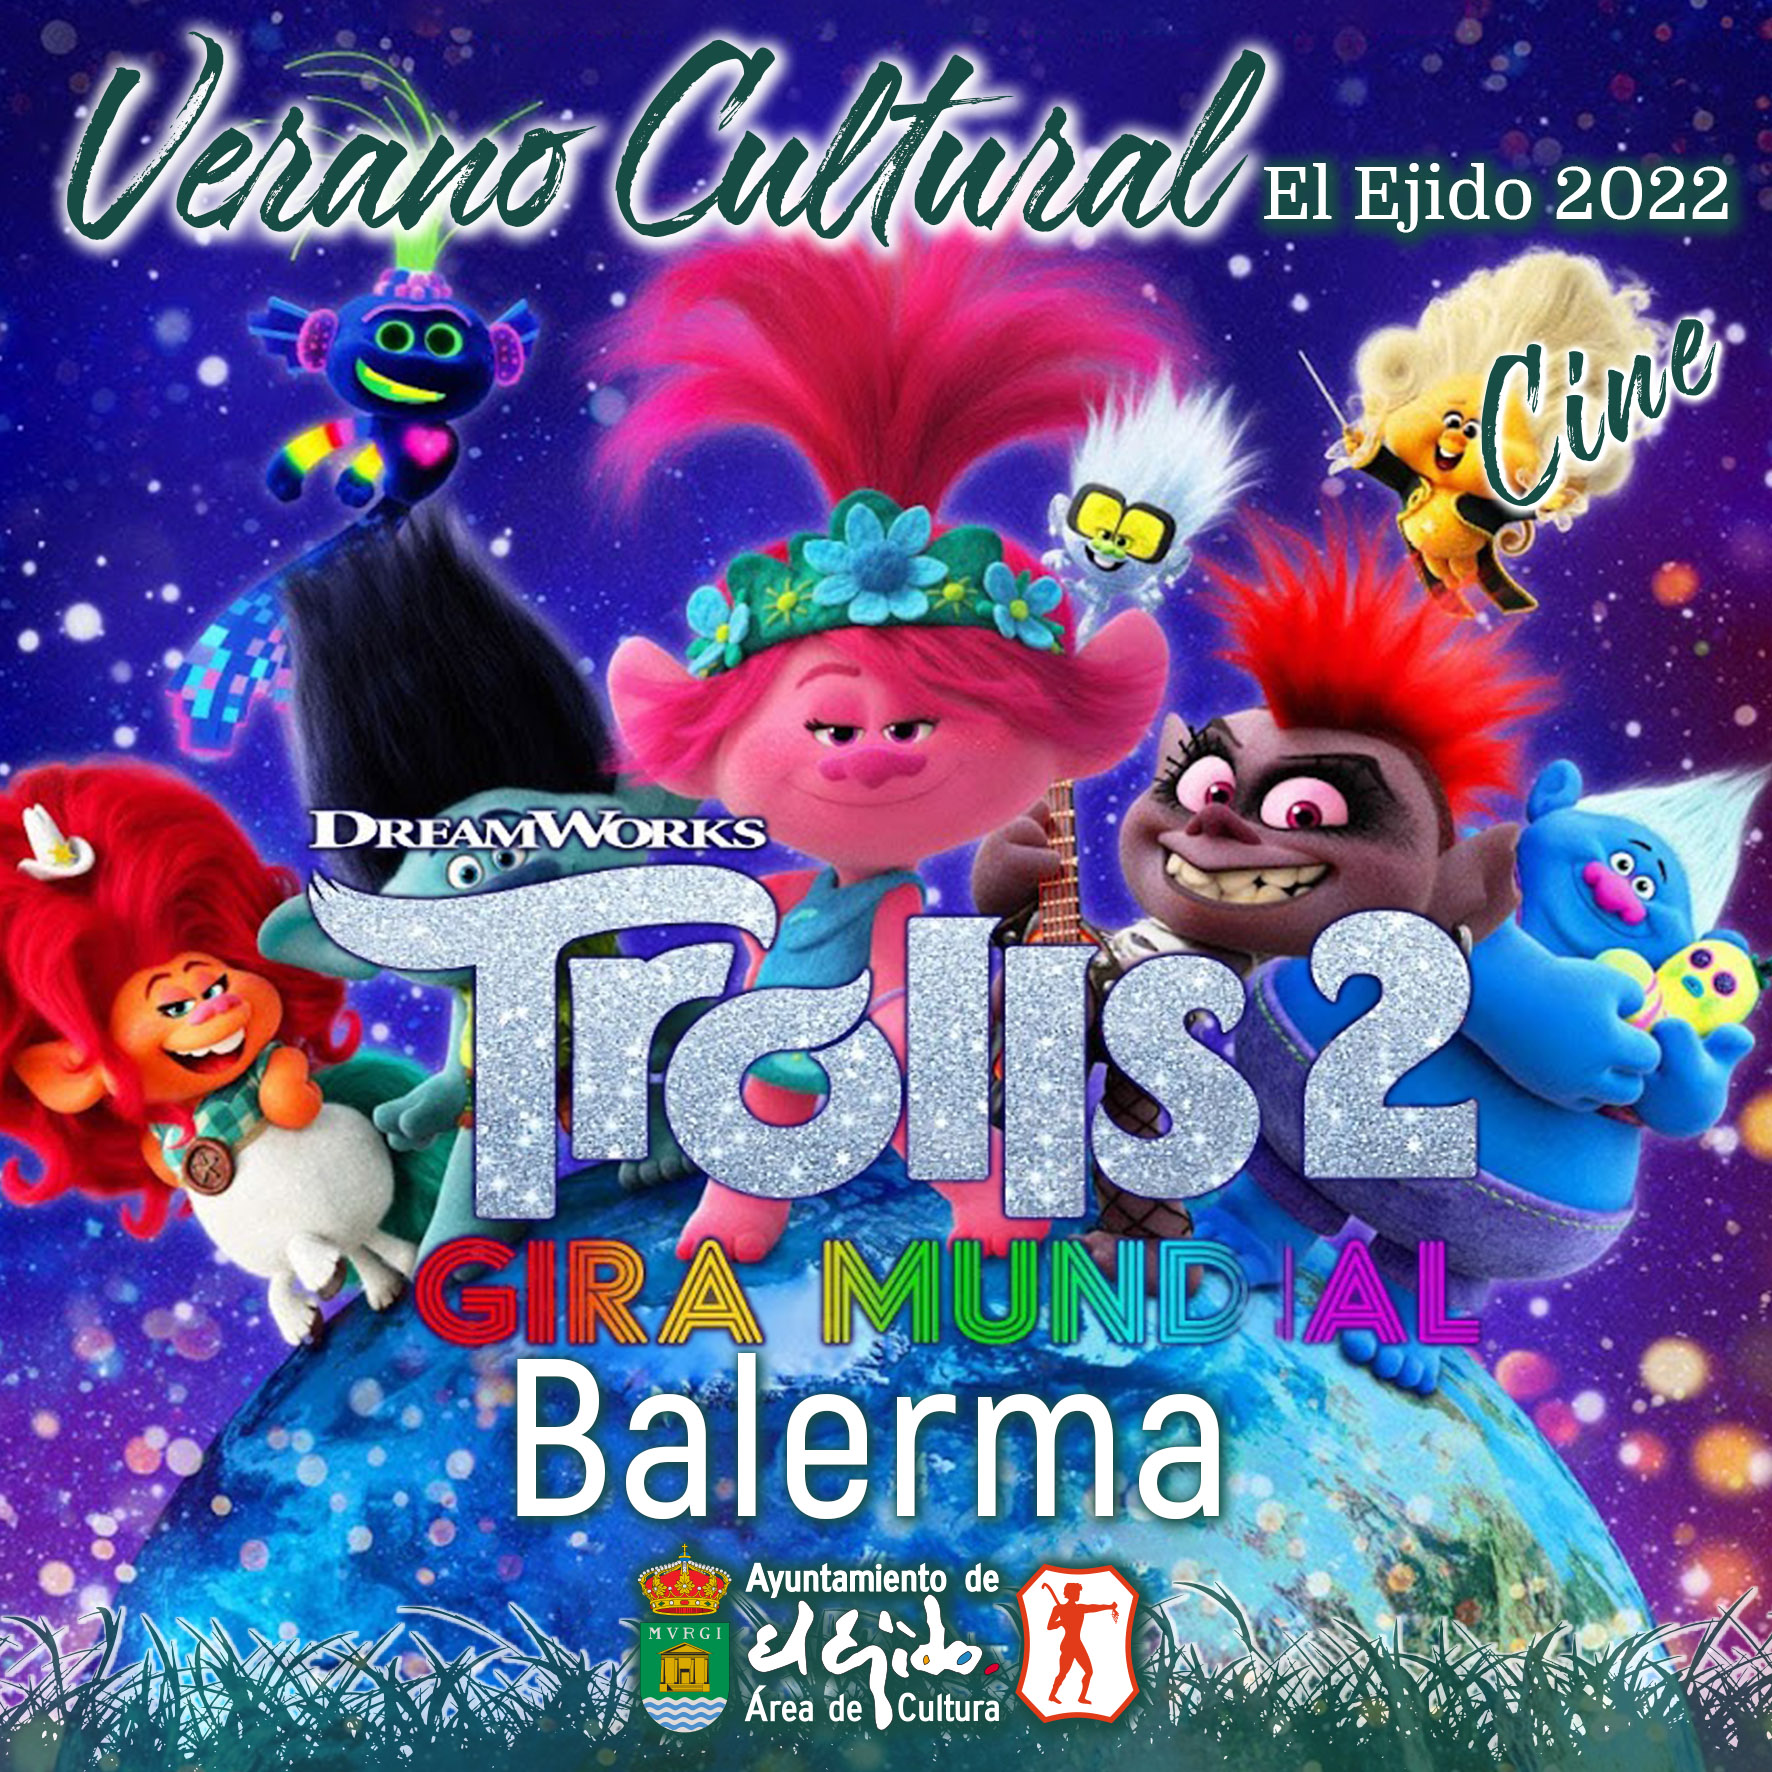 Verano Cultural 2022 de El Ejido – Cine – Balerma – Trolls 2 gira mundial